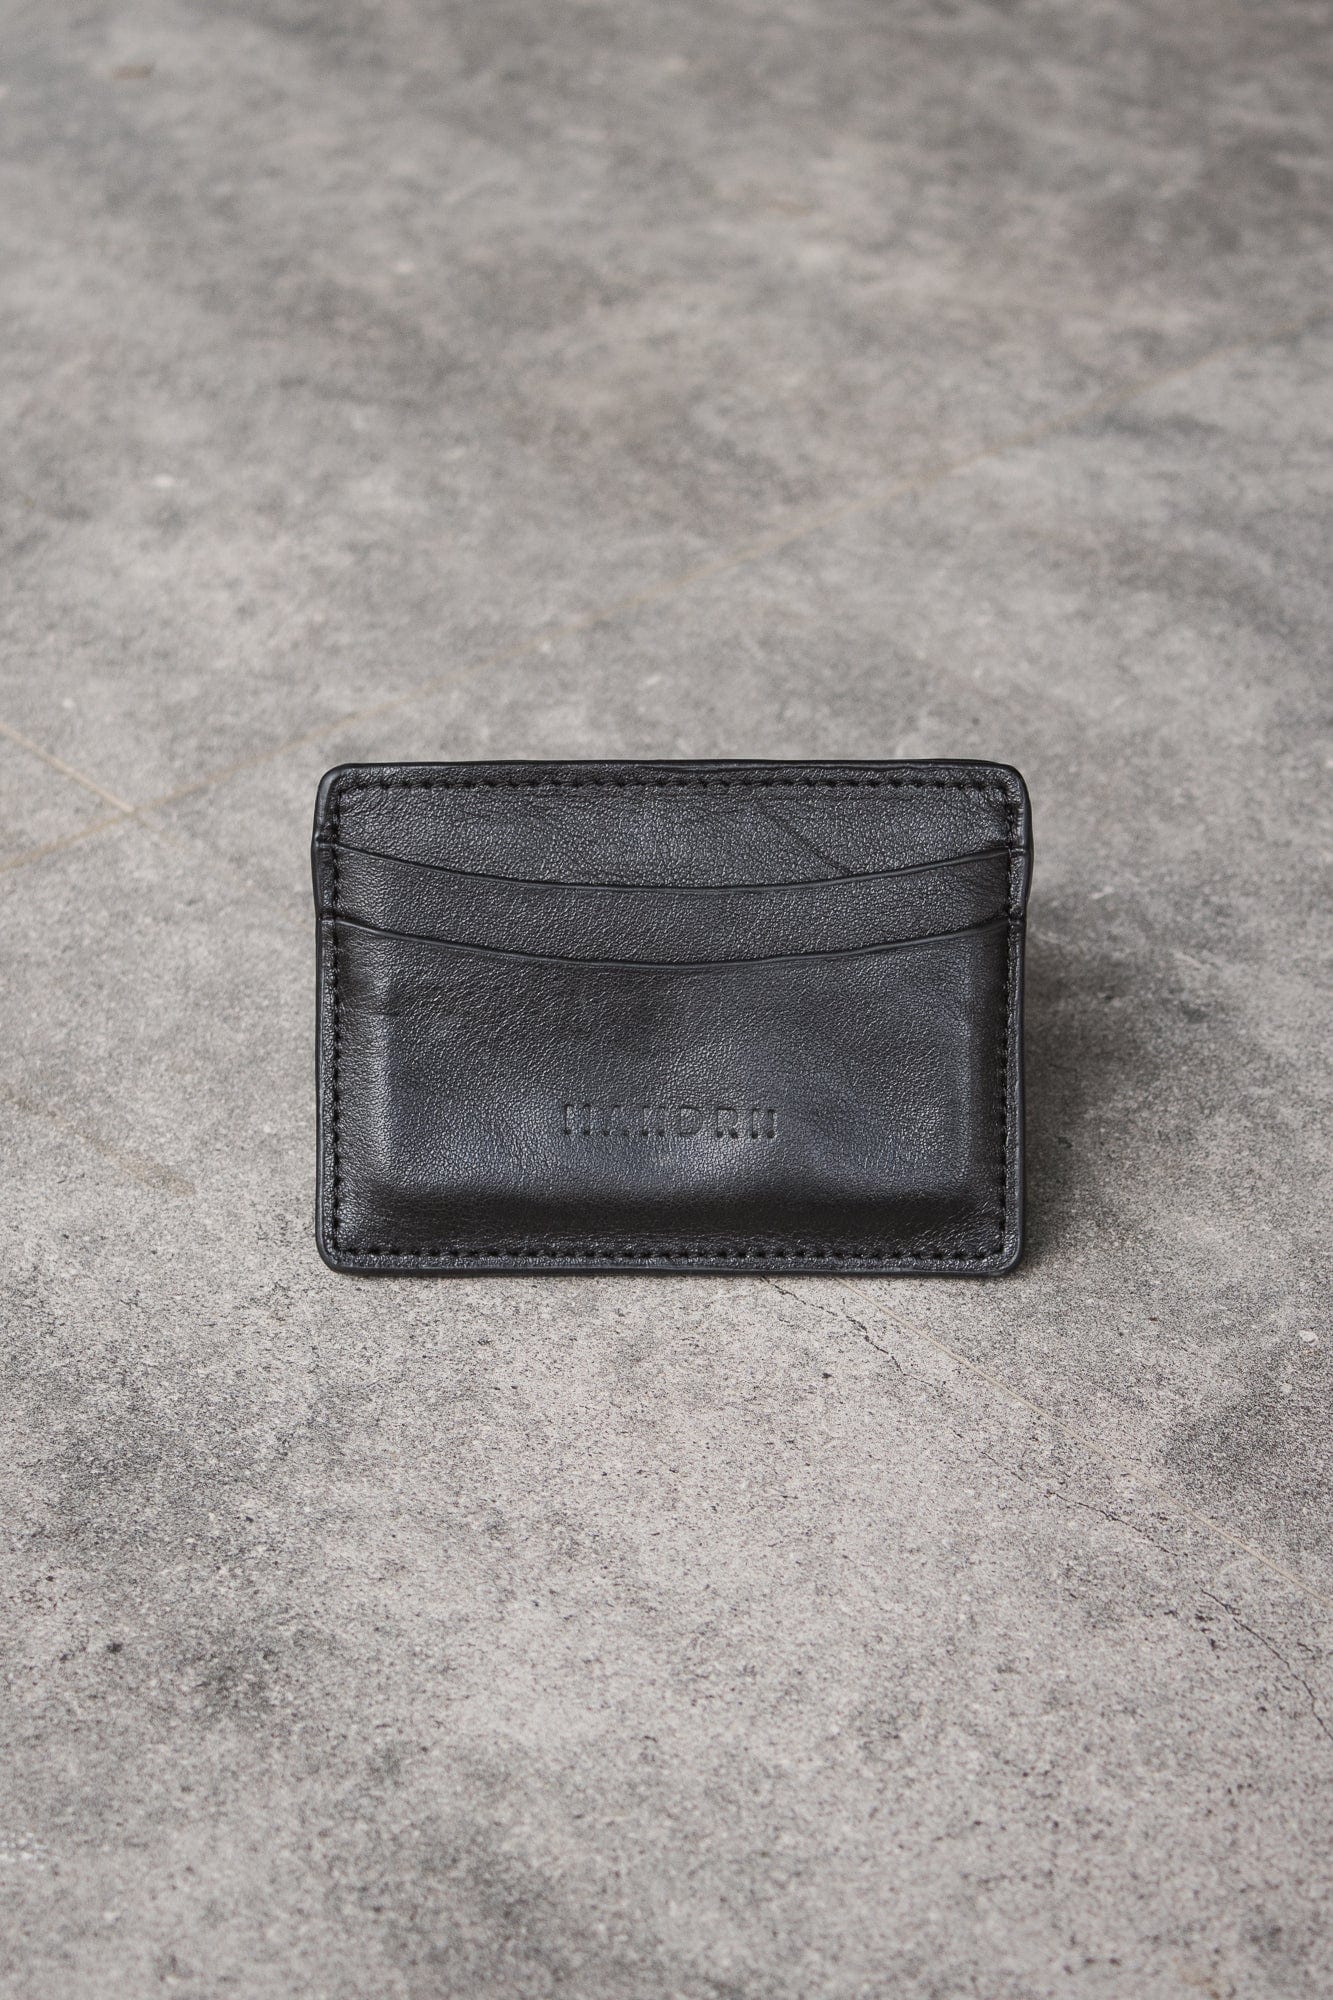 Leather Cardholder Black